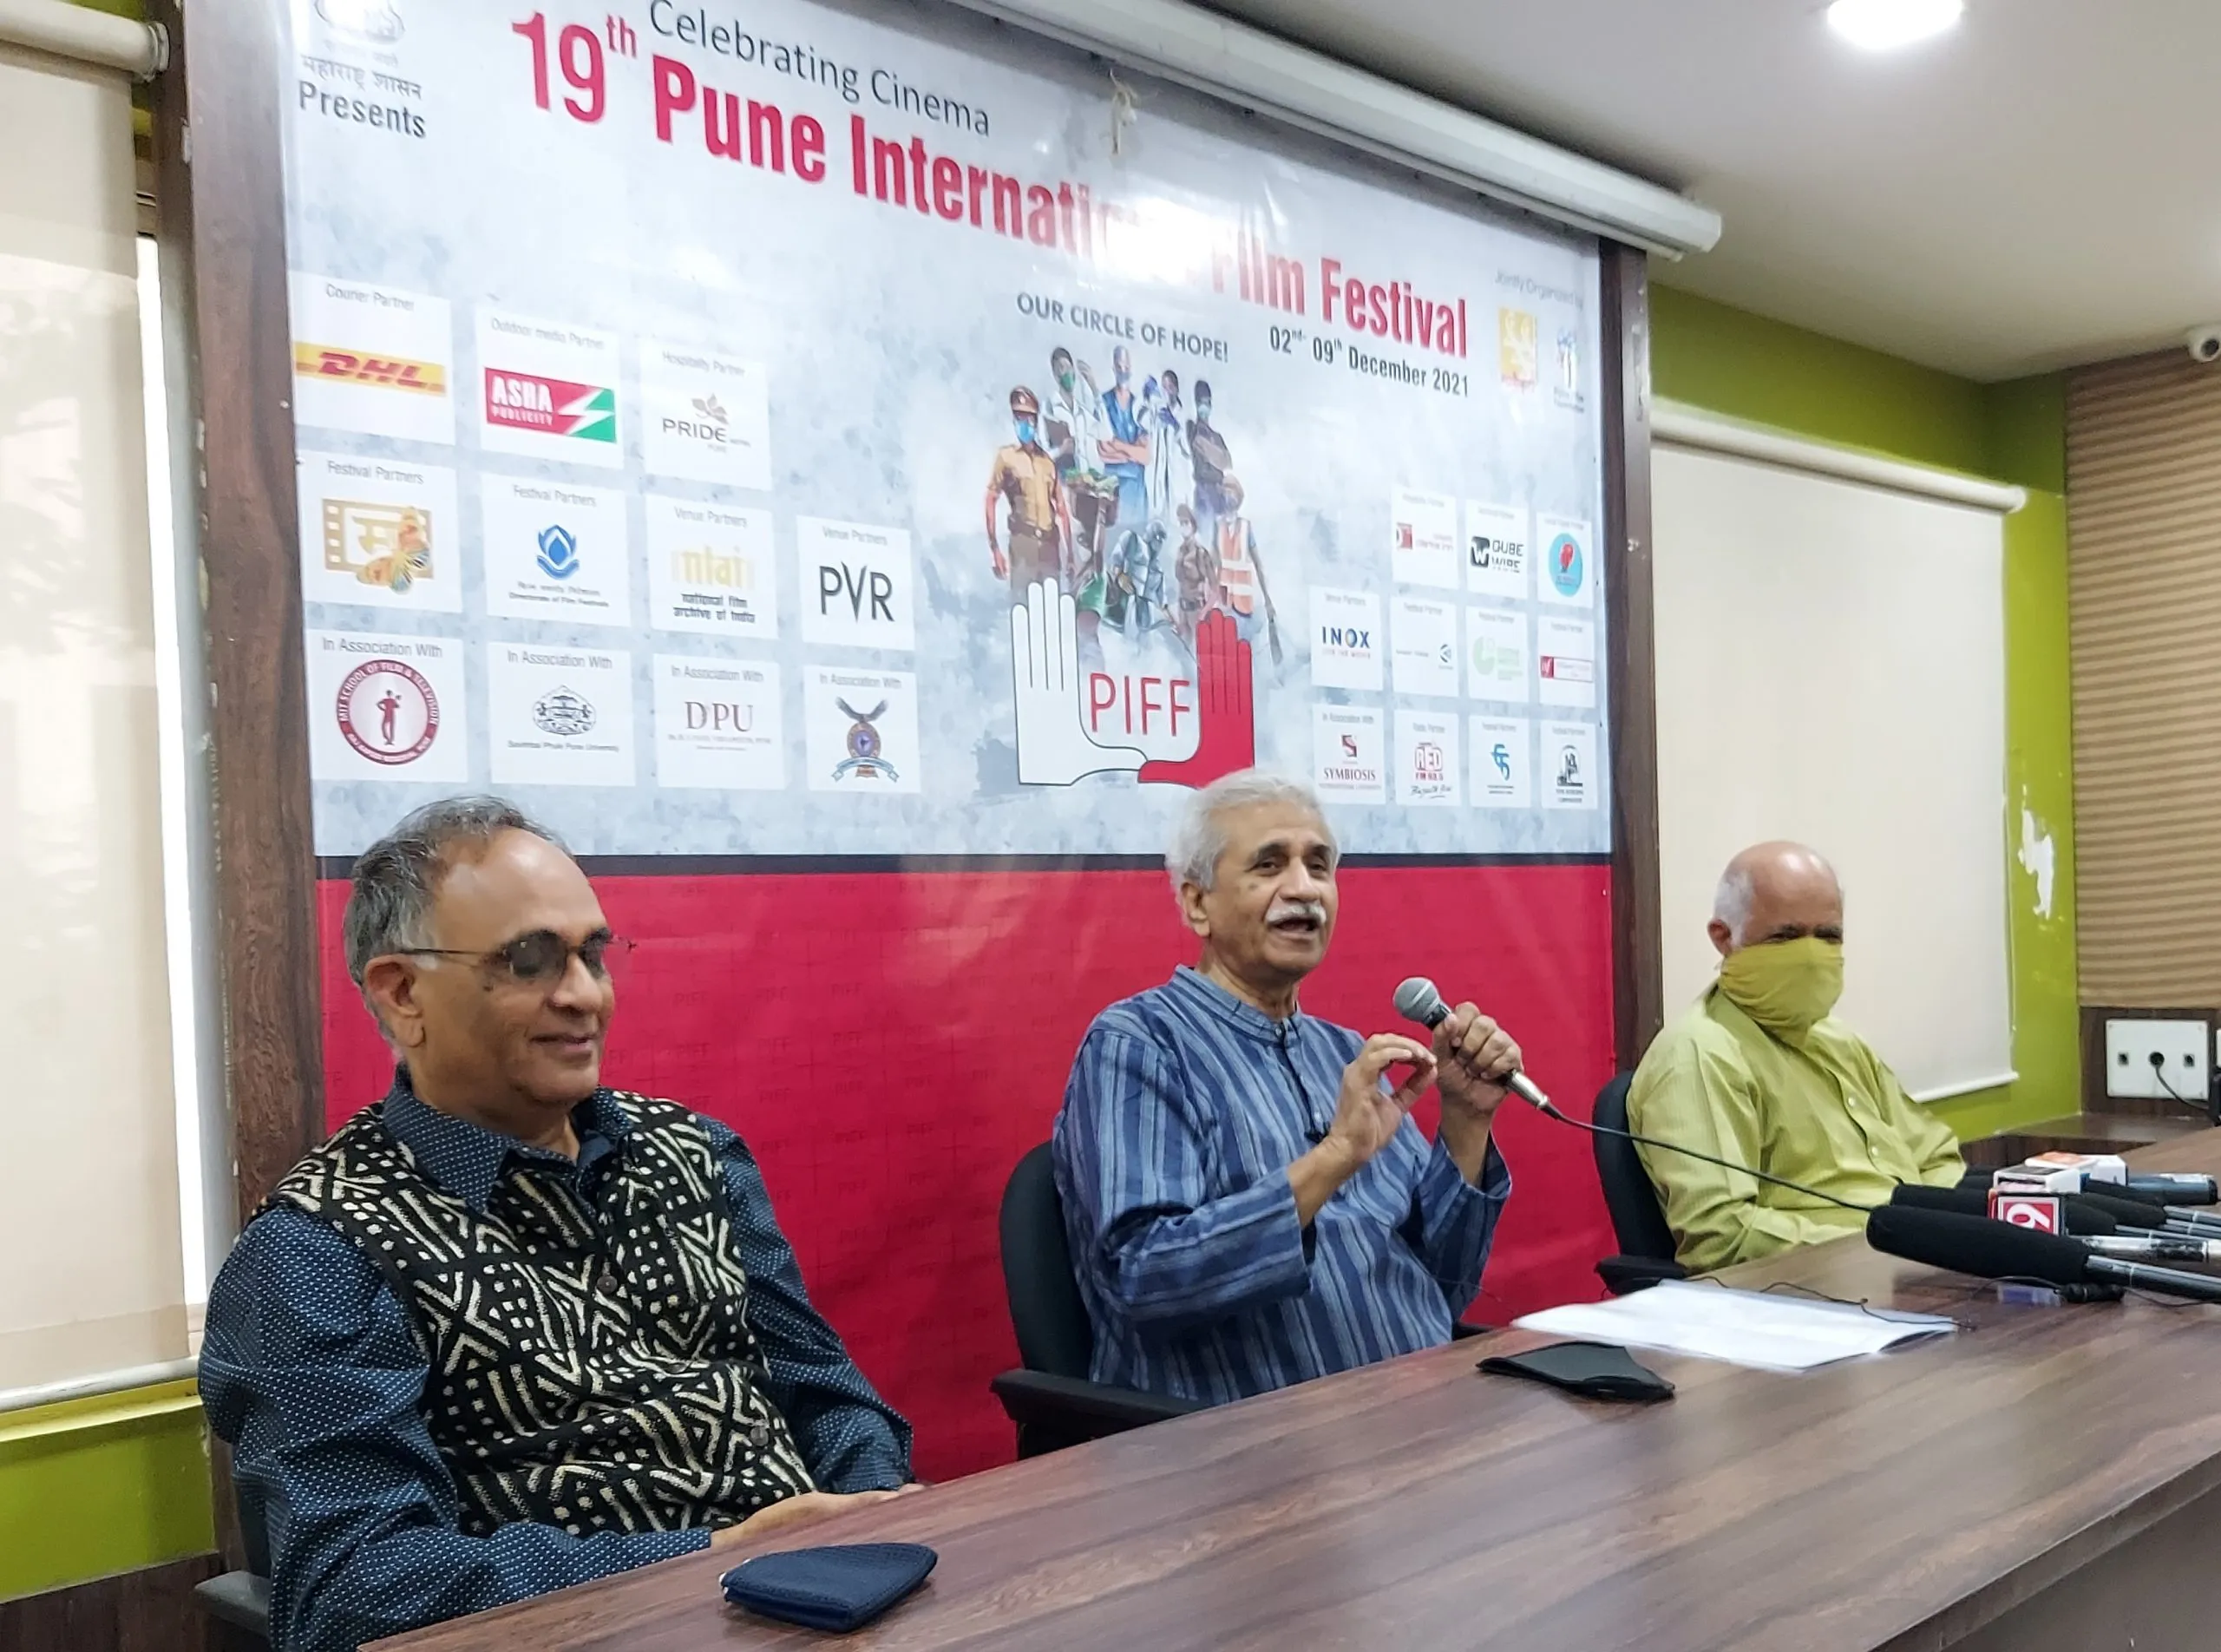 अशोक सराफ को भारतीय सिनेमा में उत्कृष्ट योगदान के लिए पीआईएफएफ विशिष्ट पुरस्कार मिलेगा